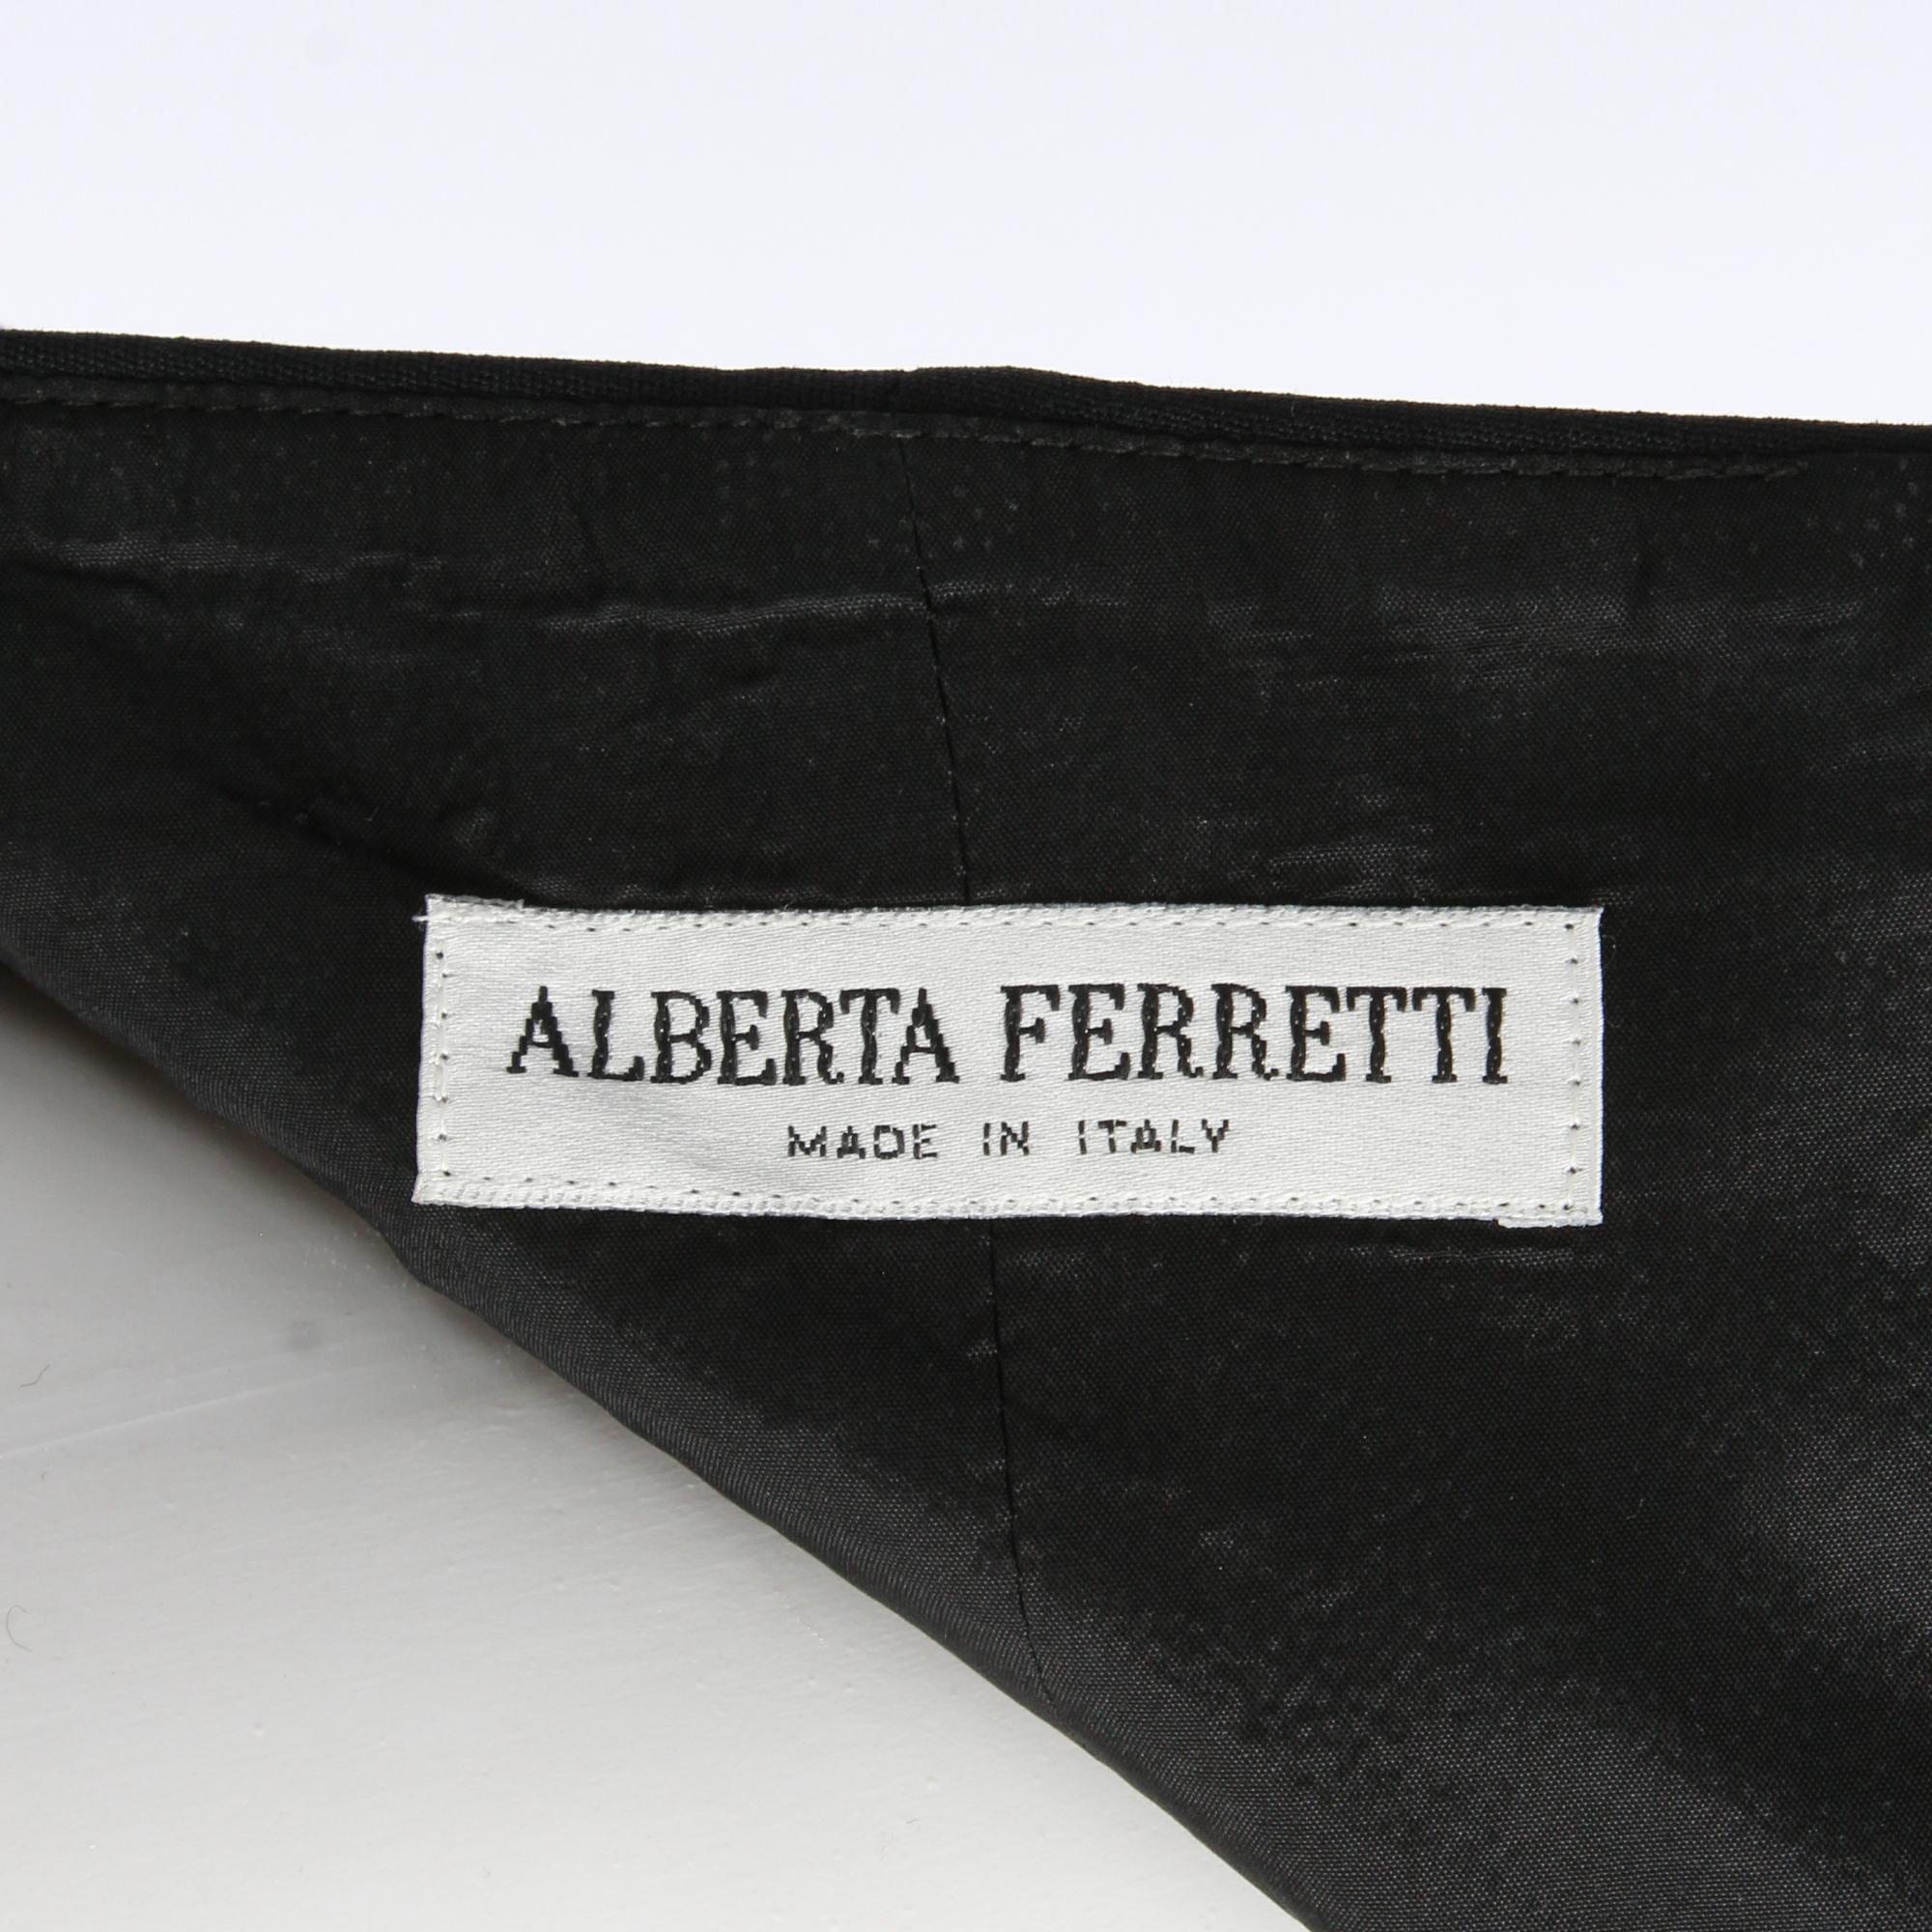 Alberta Ferretti Elegant Black Sheath Dress 1